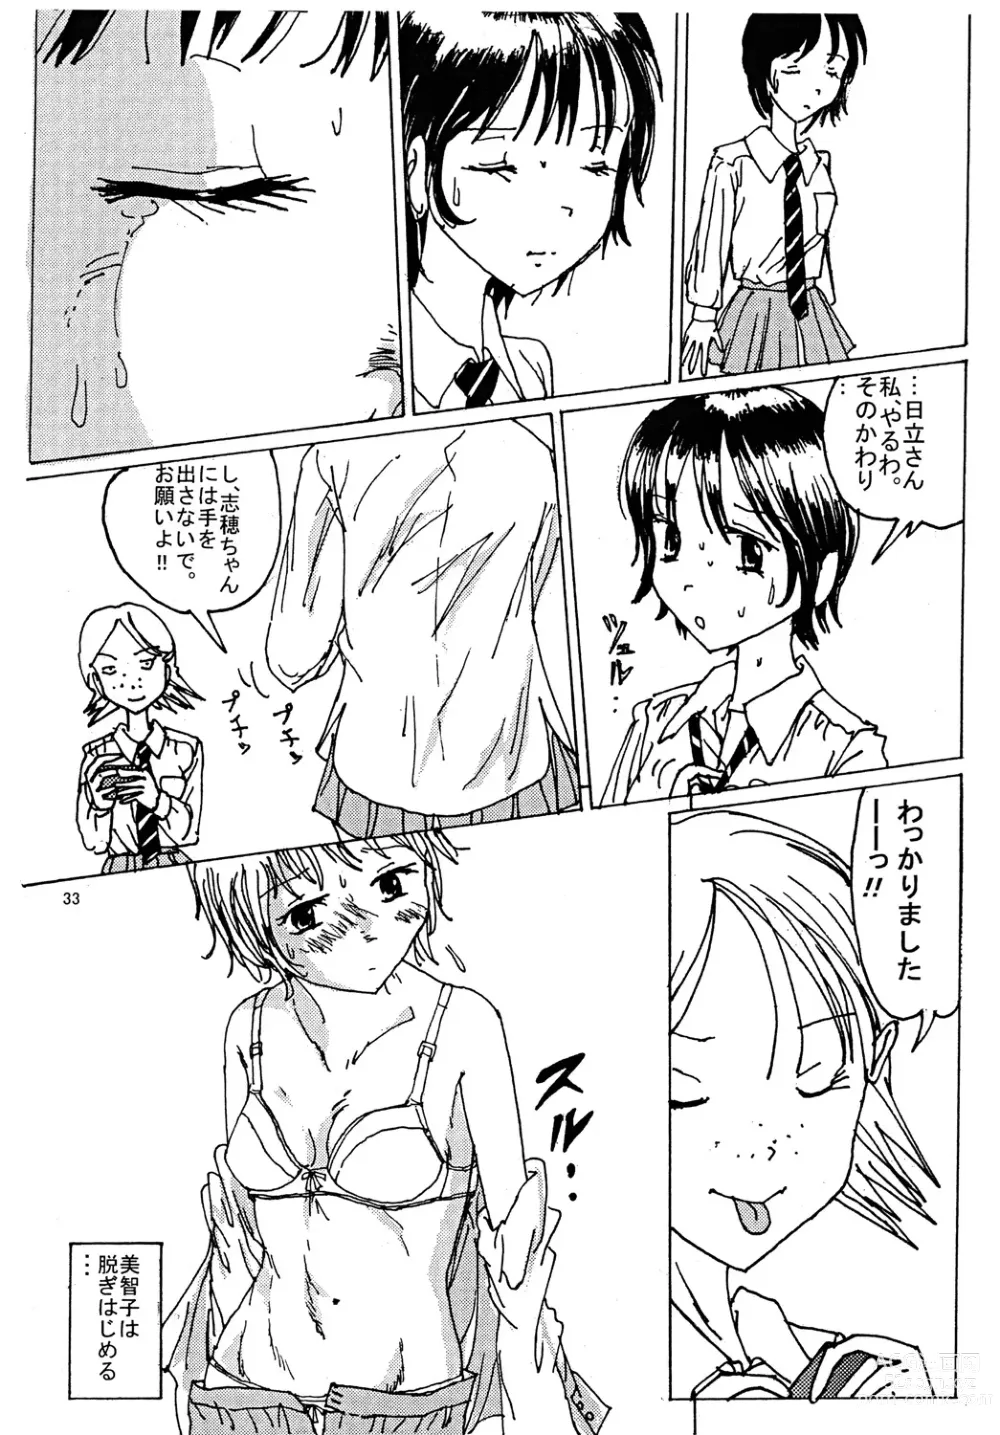 Page 32 of doujinshi Mune Ippai no Dizzy